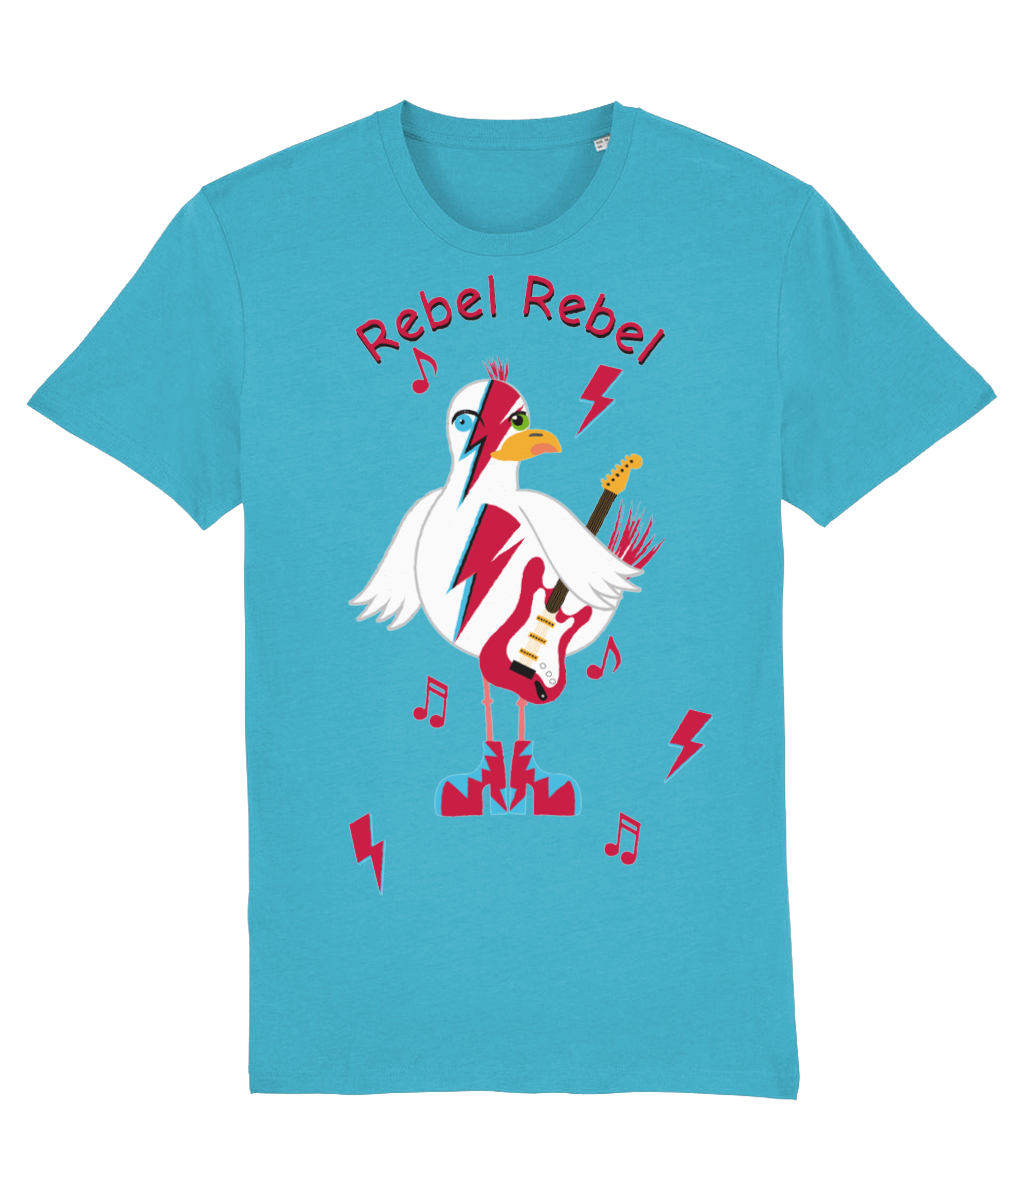 Rebel Seagul - Rebel Rebel - Teeshirt